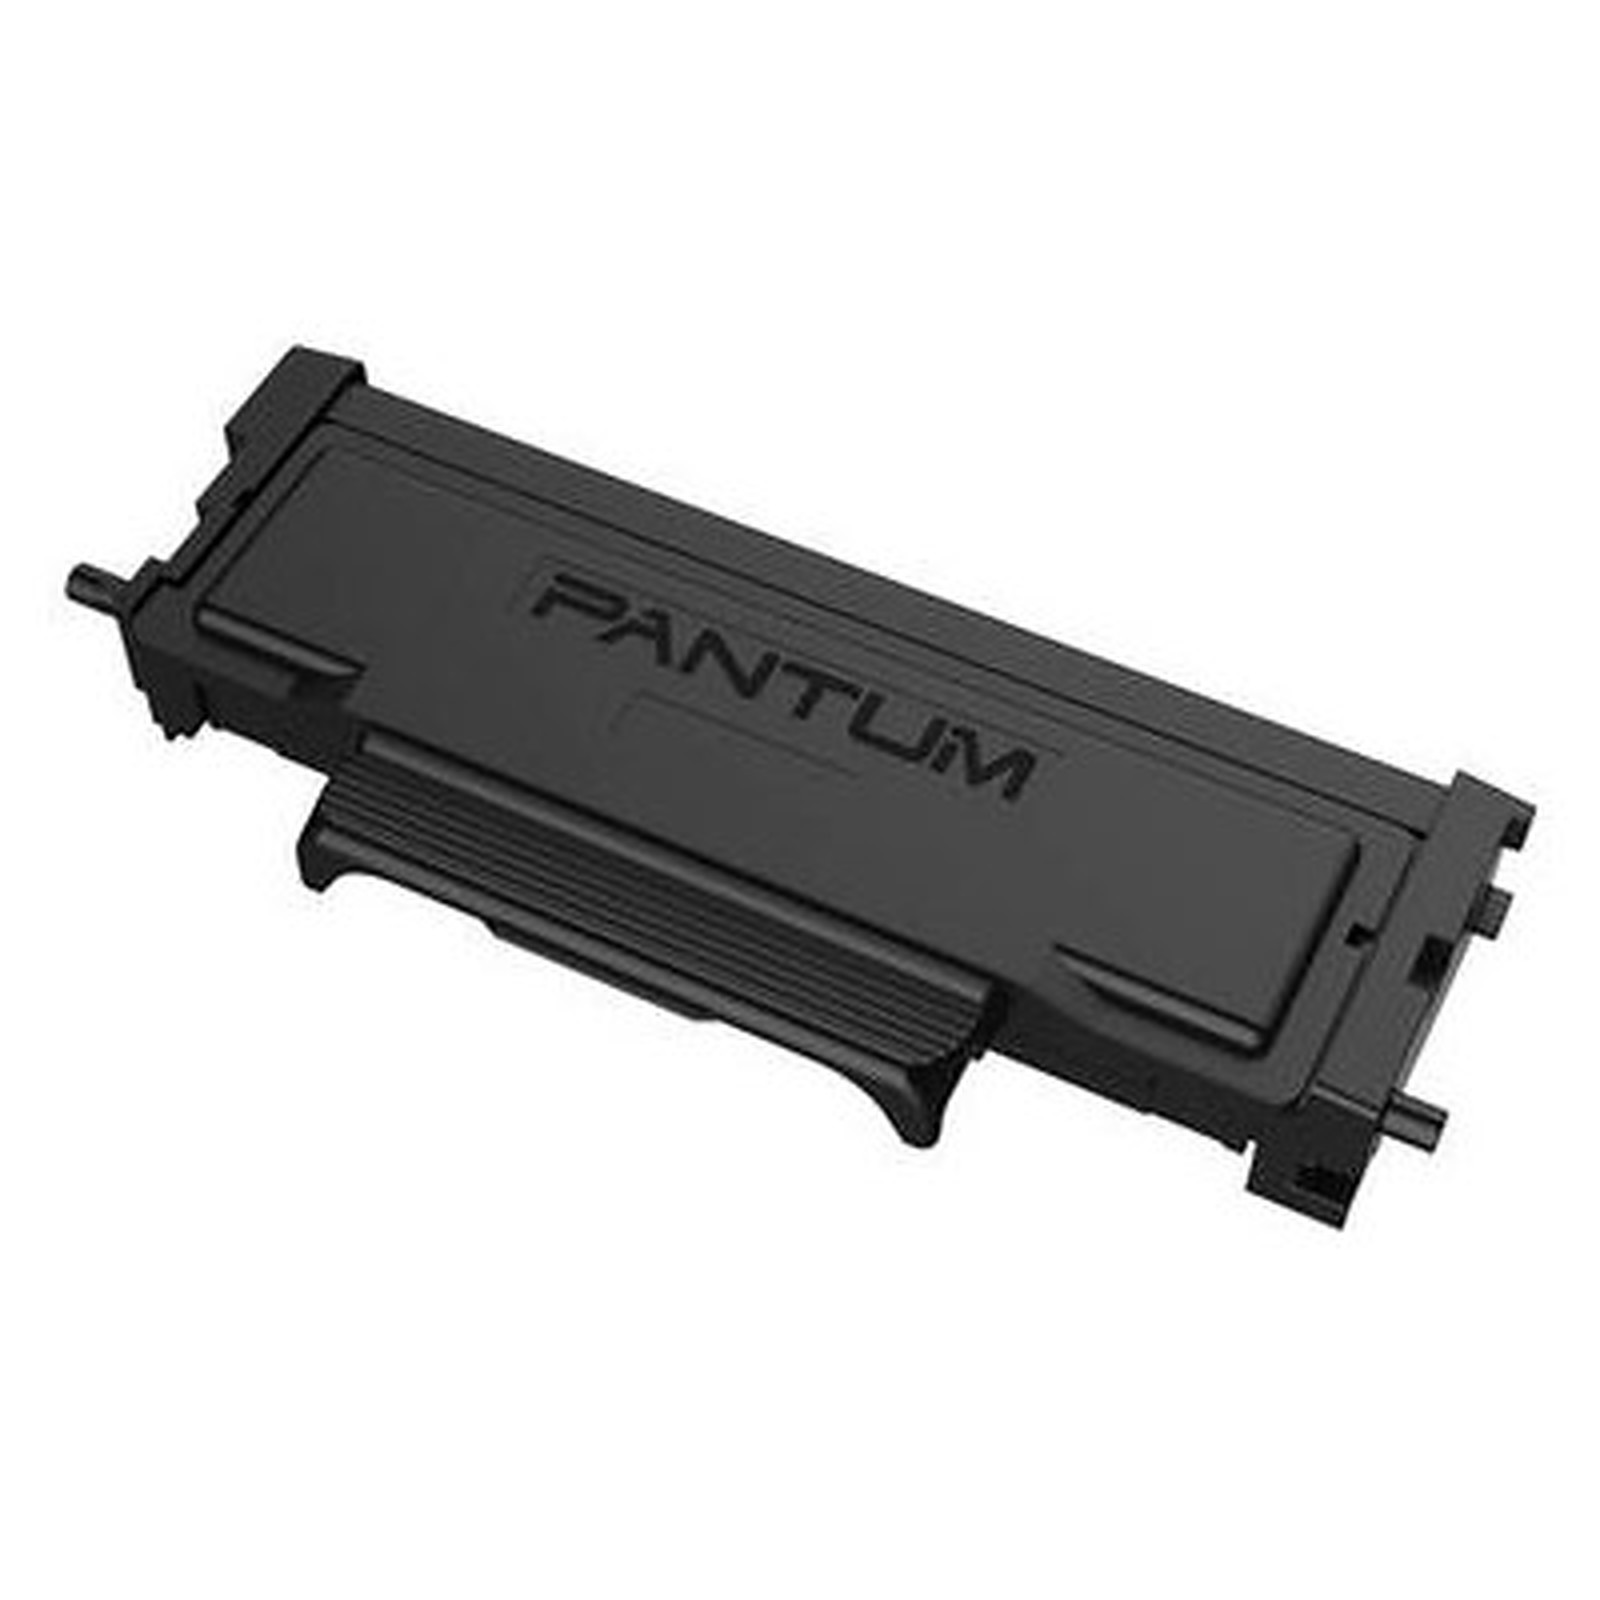 Pantum TL-410 - Toner imprimante Pantum